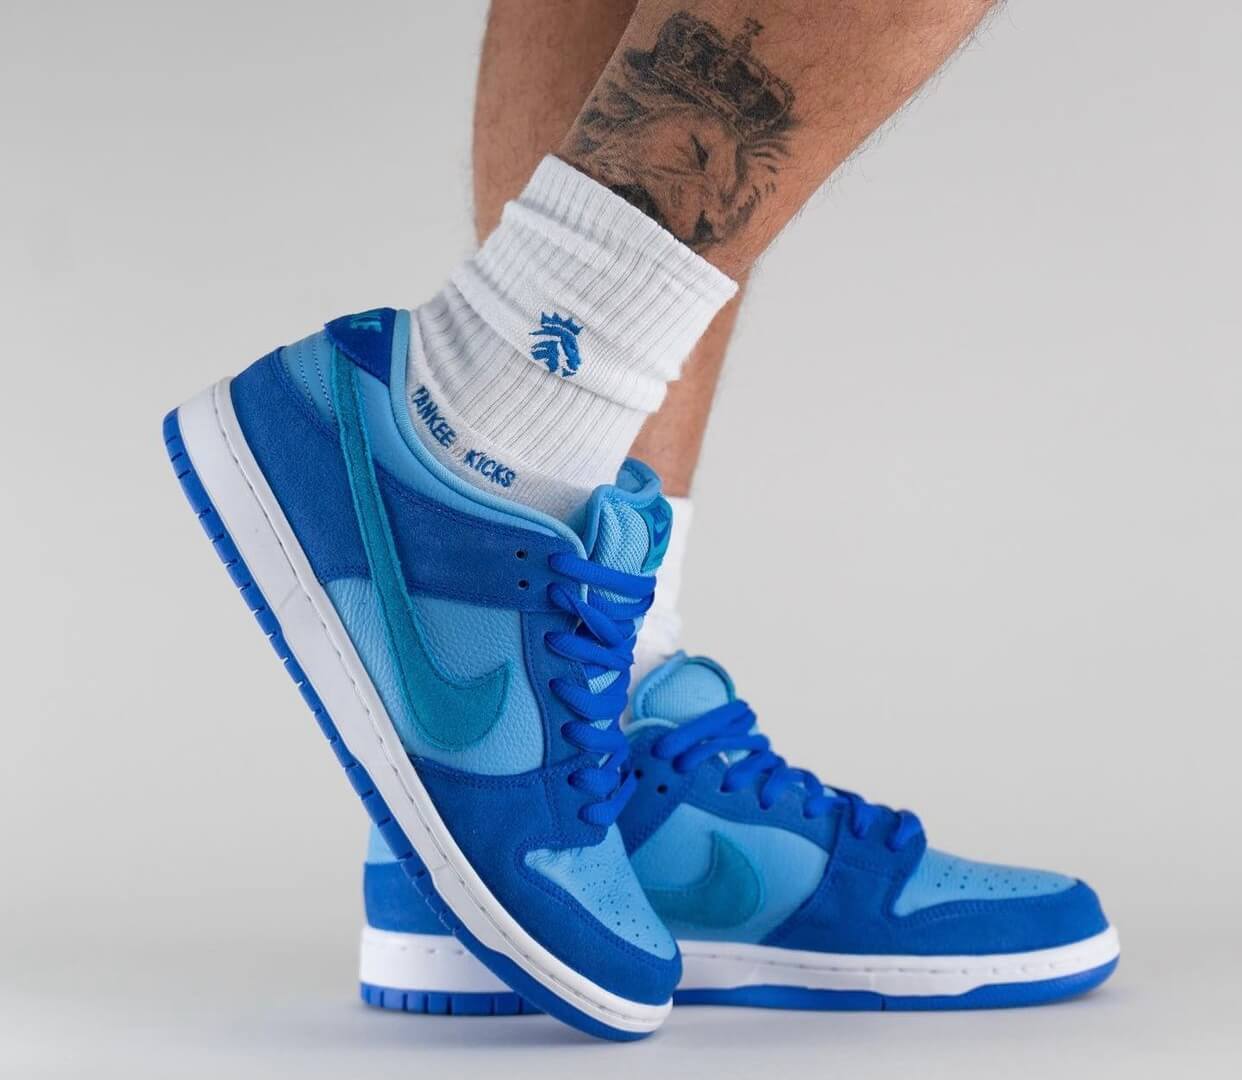 Nike SB Dunk Low “Blue Raspberry” – YankeeKicks Online